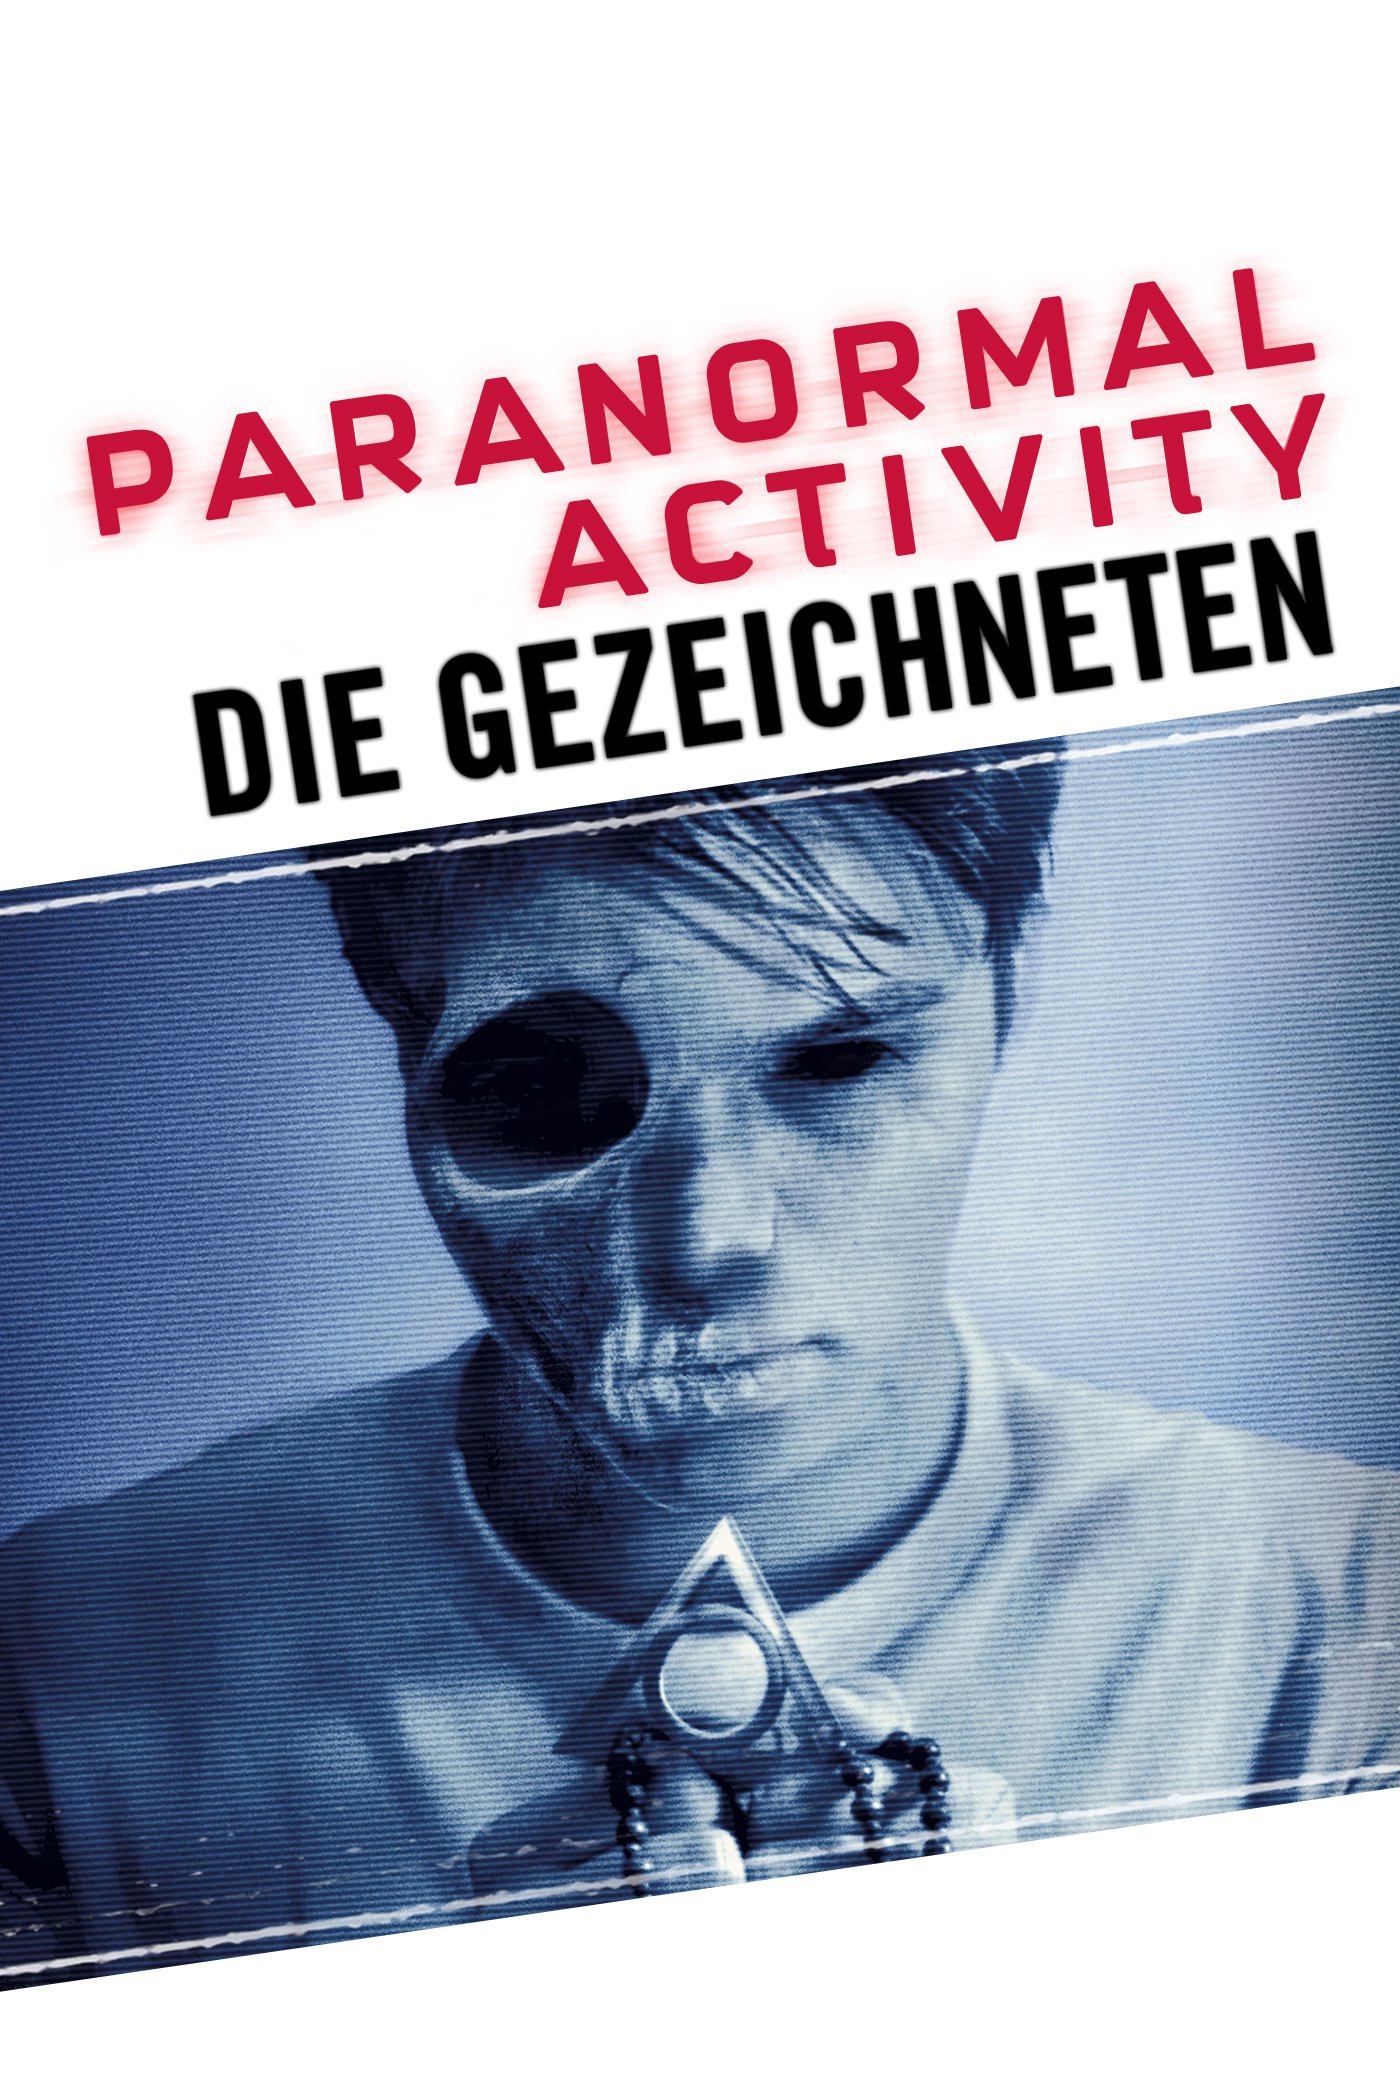 Plakat von "Paranormal Activity - Die Gezeichneten"